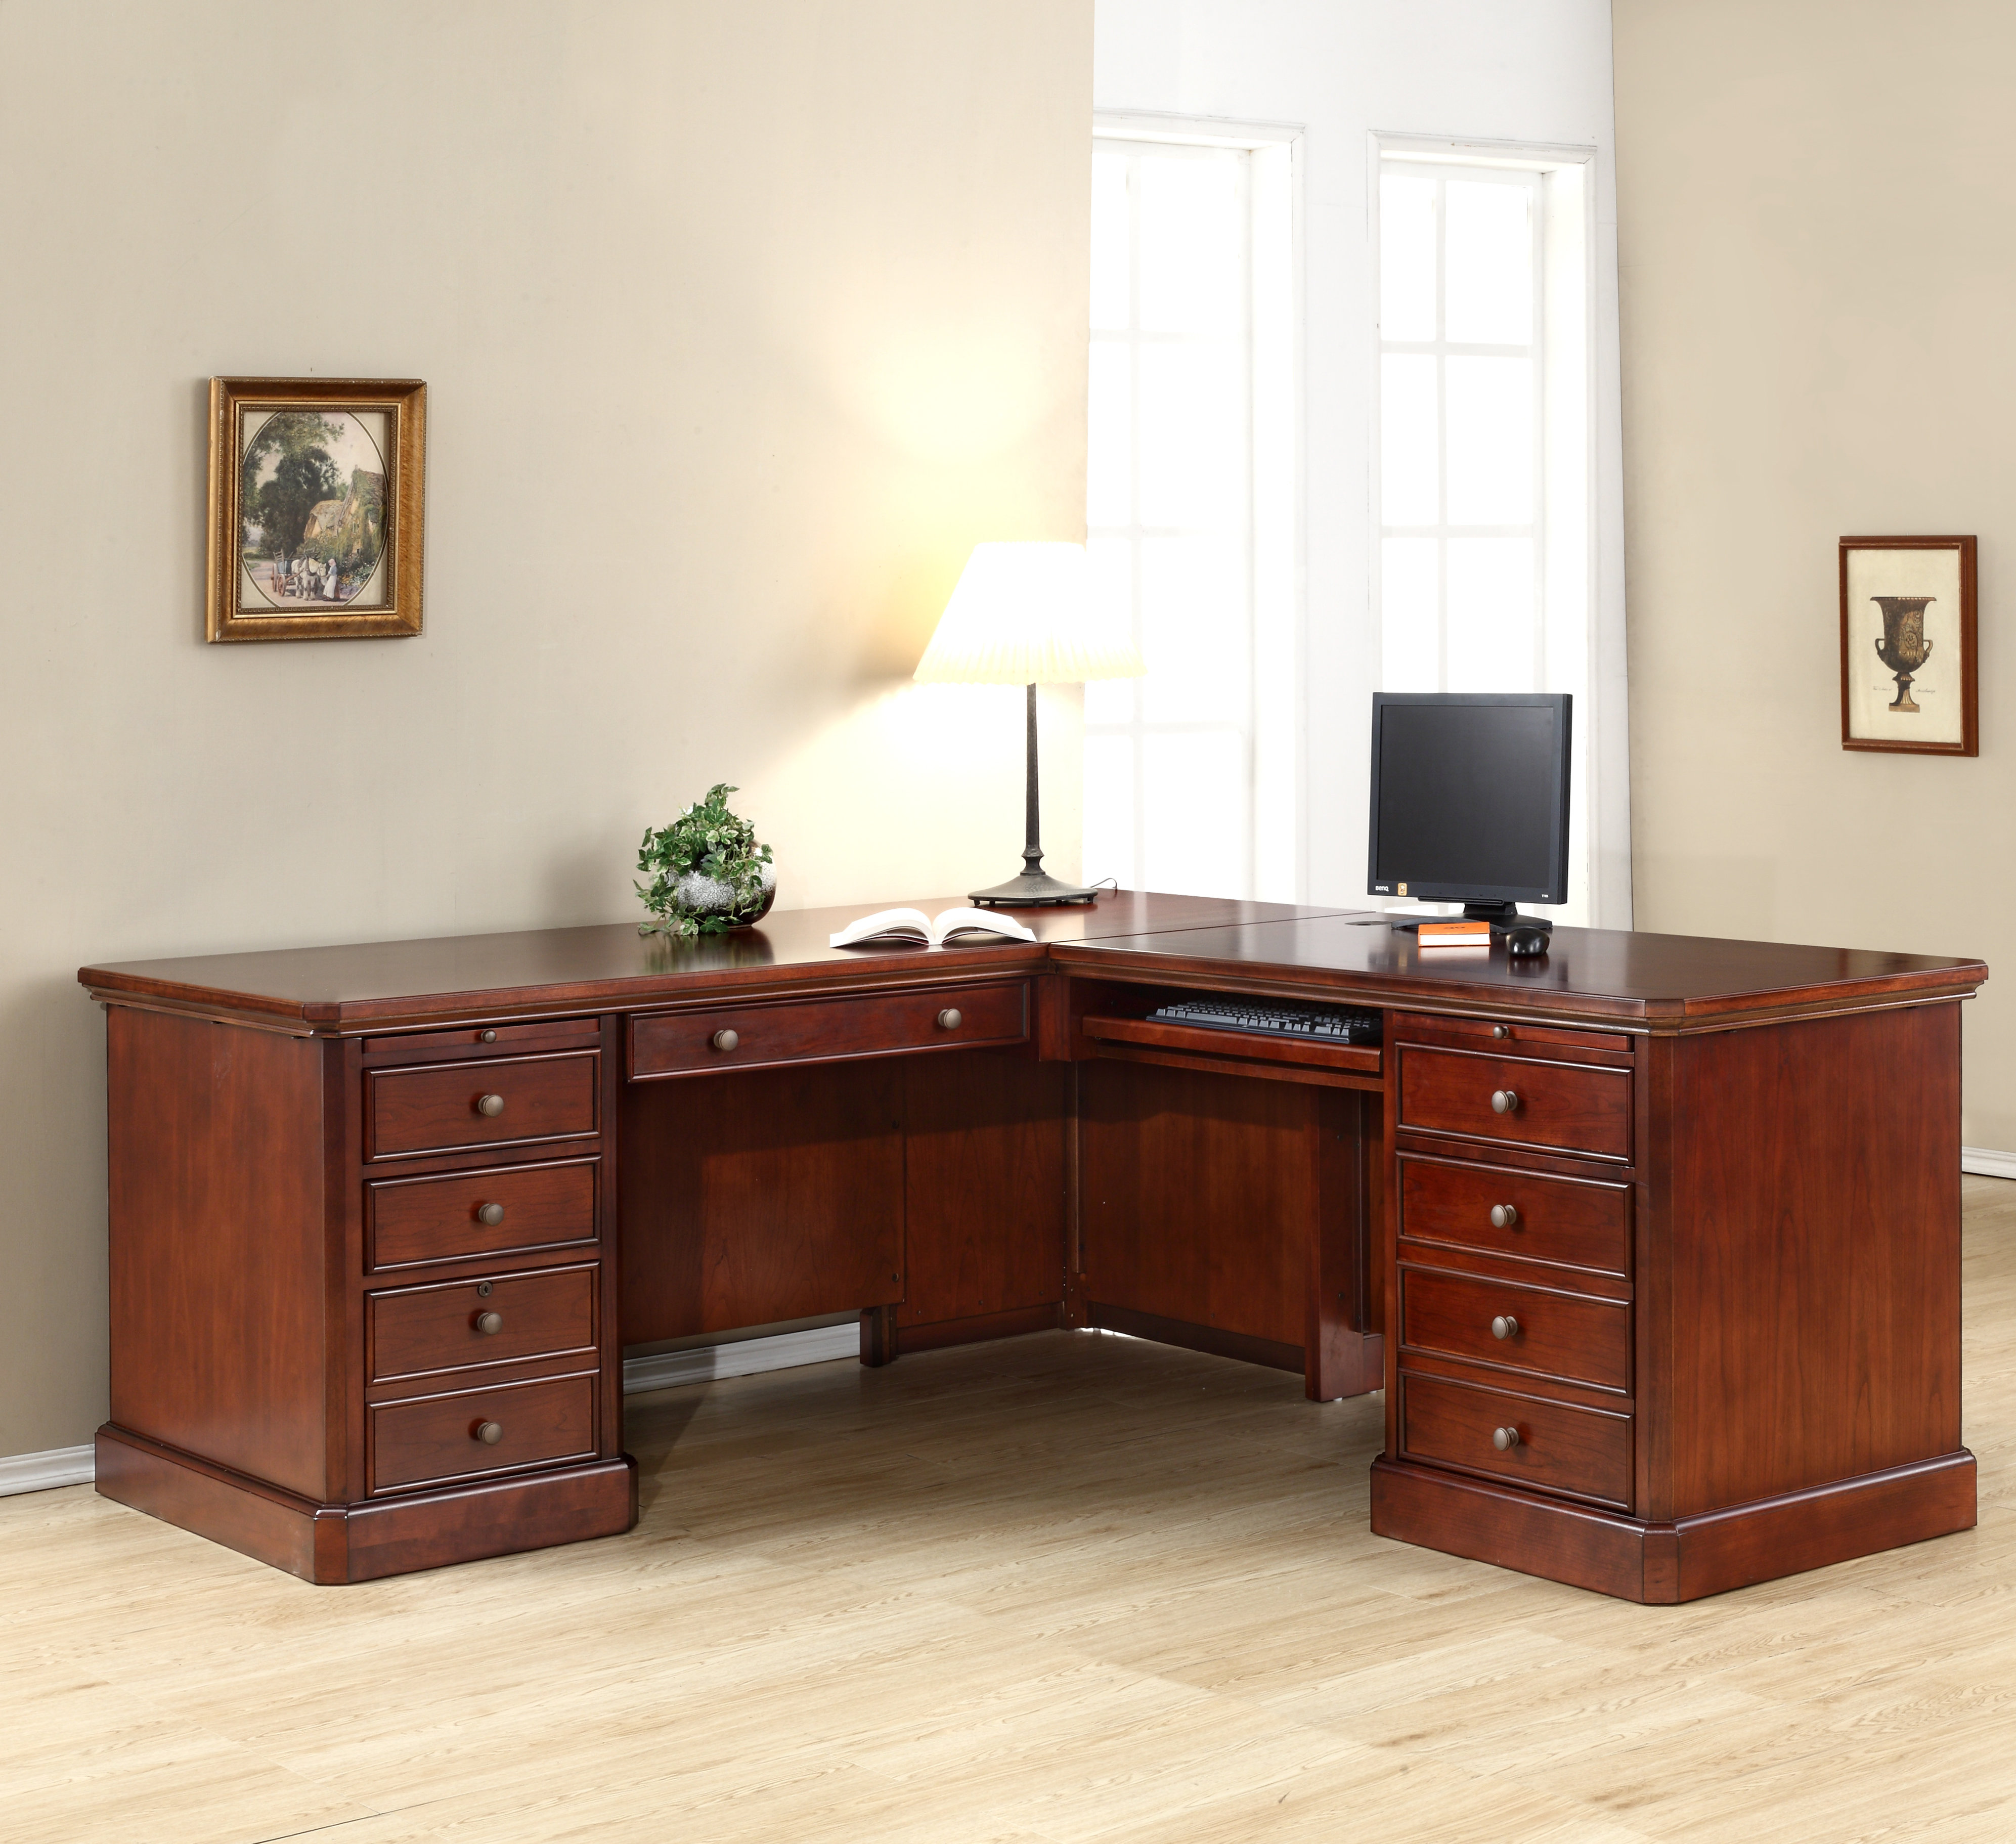 Darby Home Co Spielman L Shape Executive Desk Reviews Wayfair